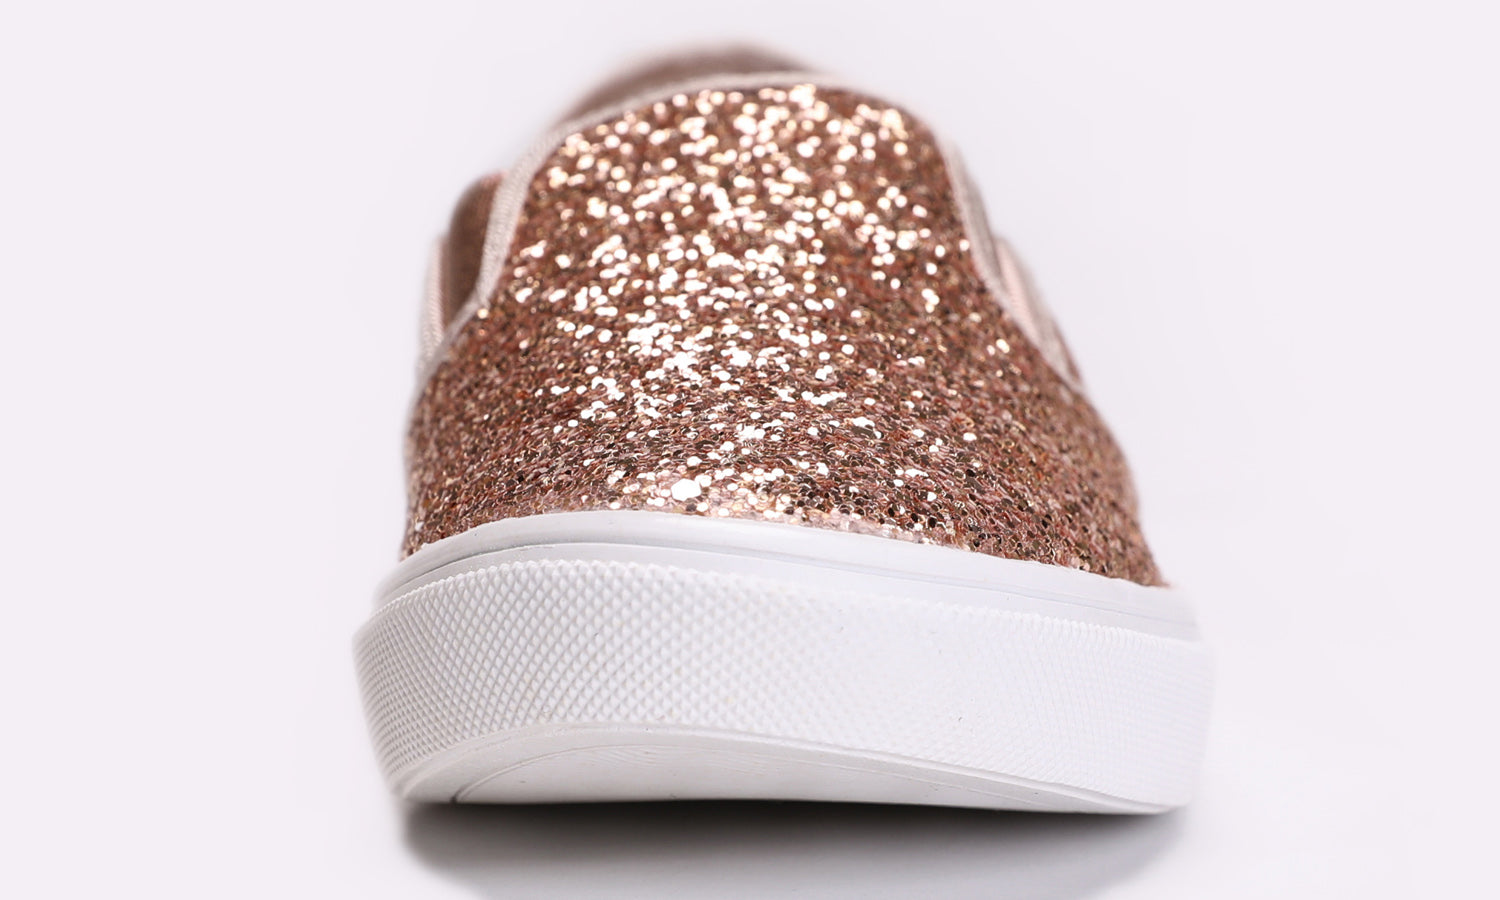 Feversole Women's Glitter Black Slip on Sneaker Casual Flat Loafers Us8.5/Eu39